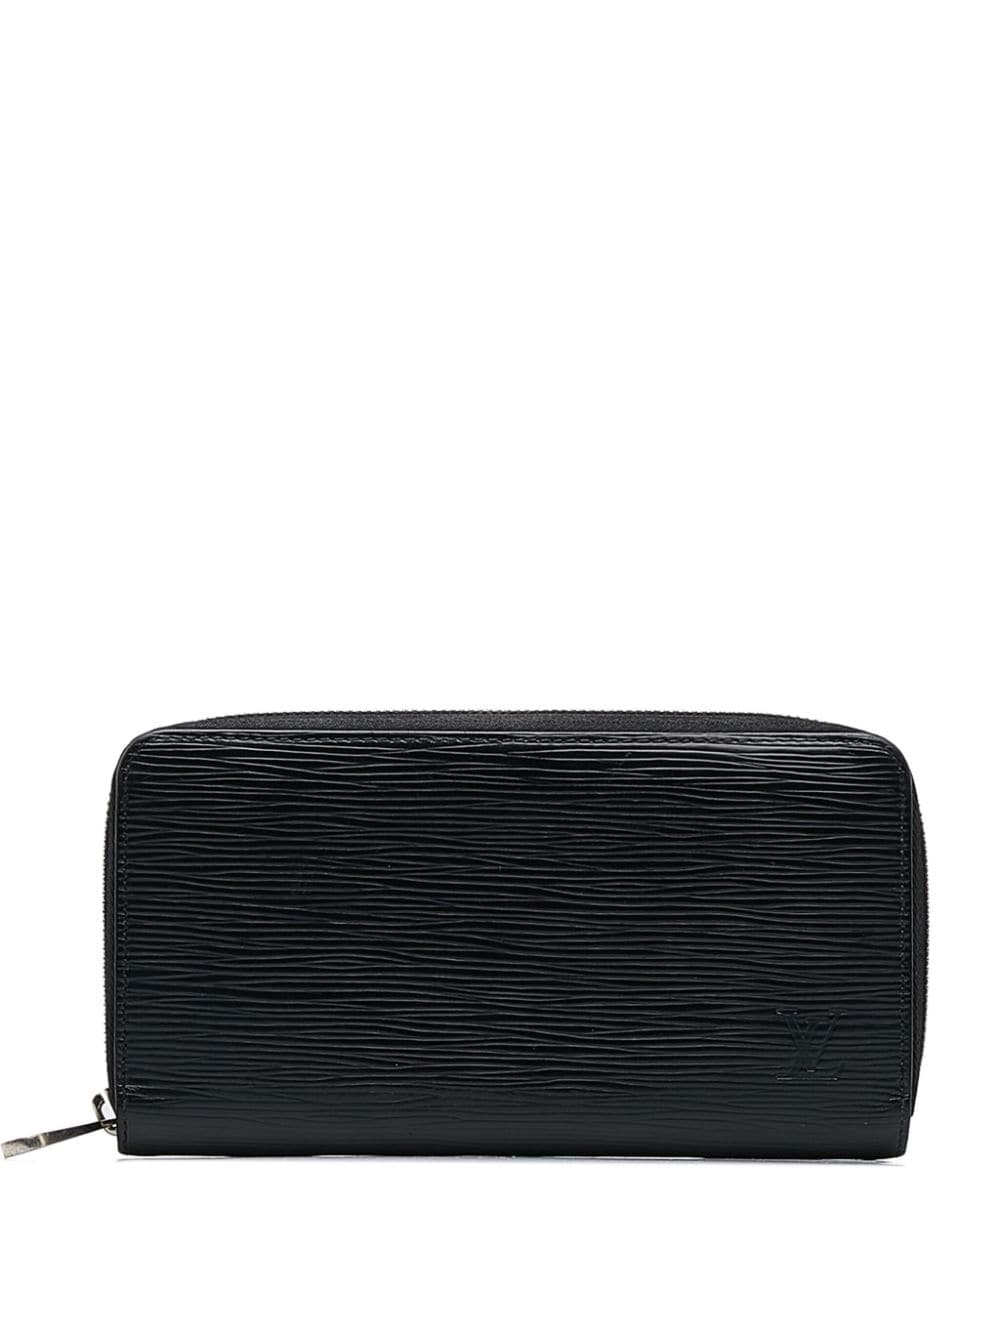 Pre-owned Louis Vuitton 2017 Epi Zippy Wallet Long Wallets In Black